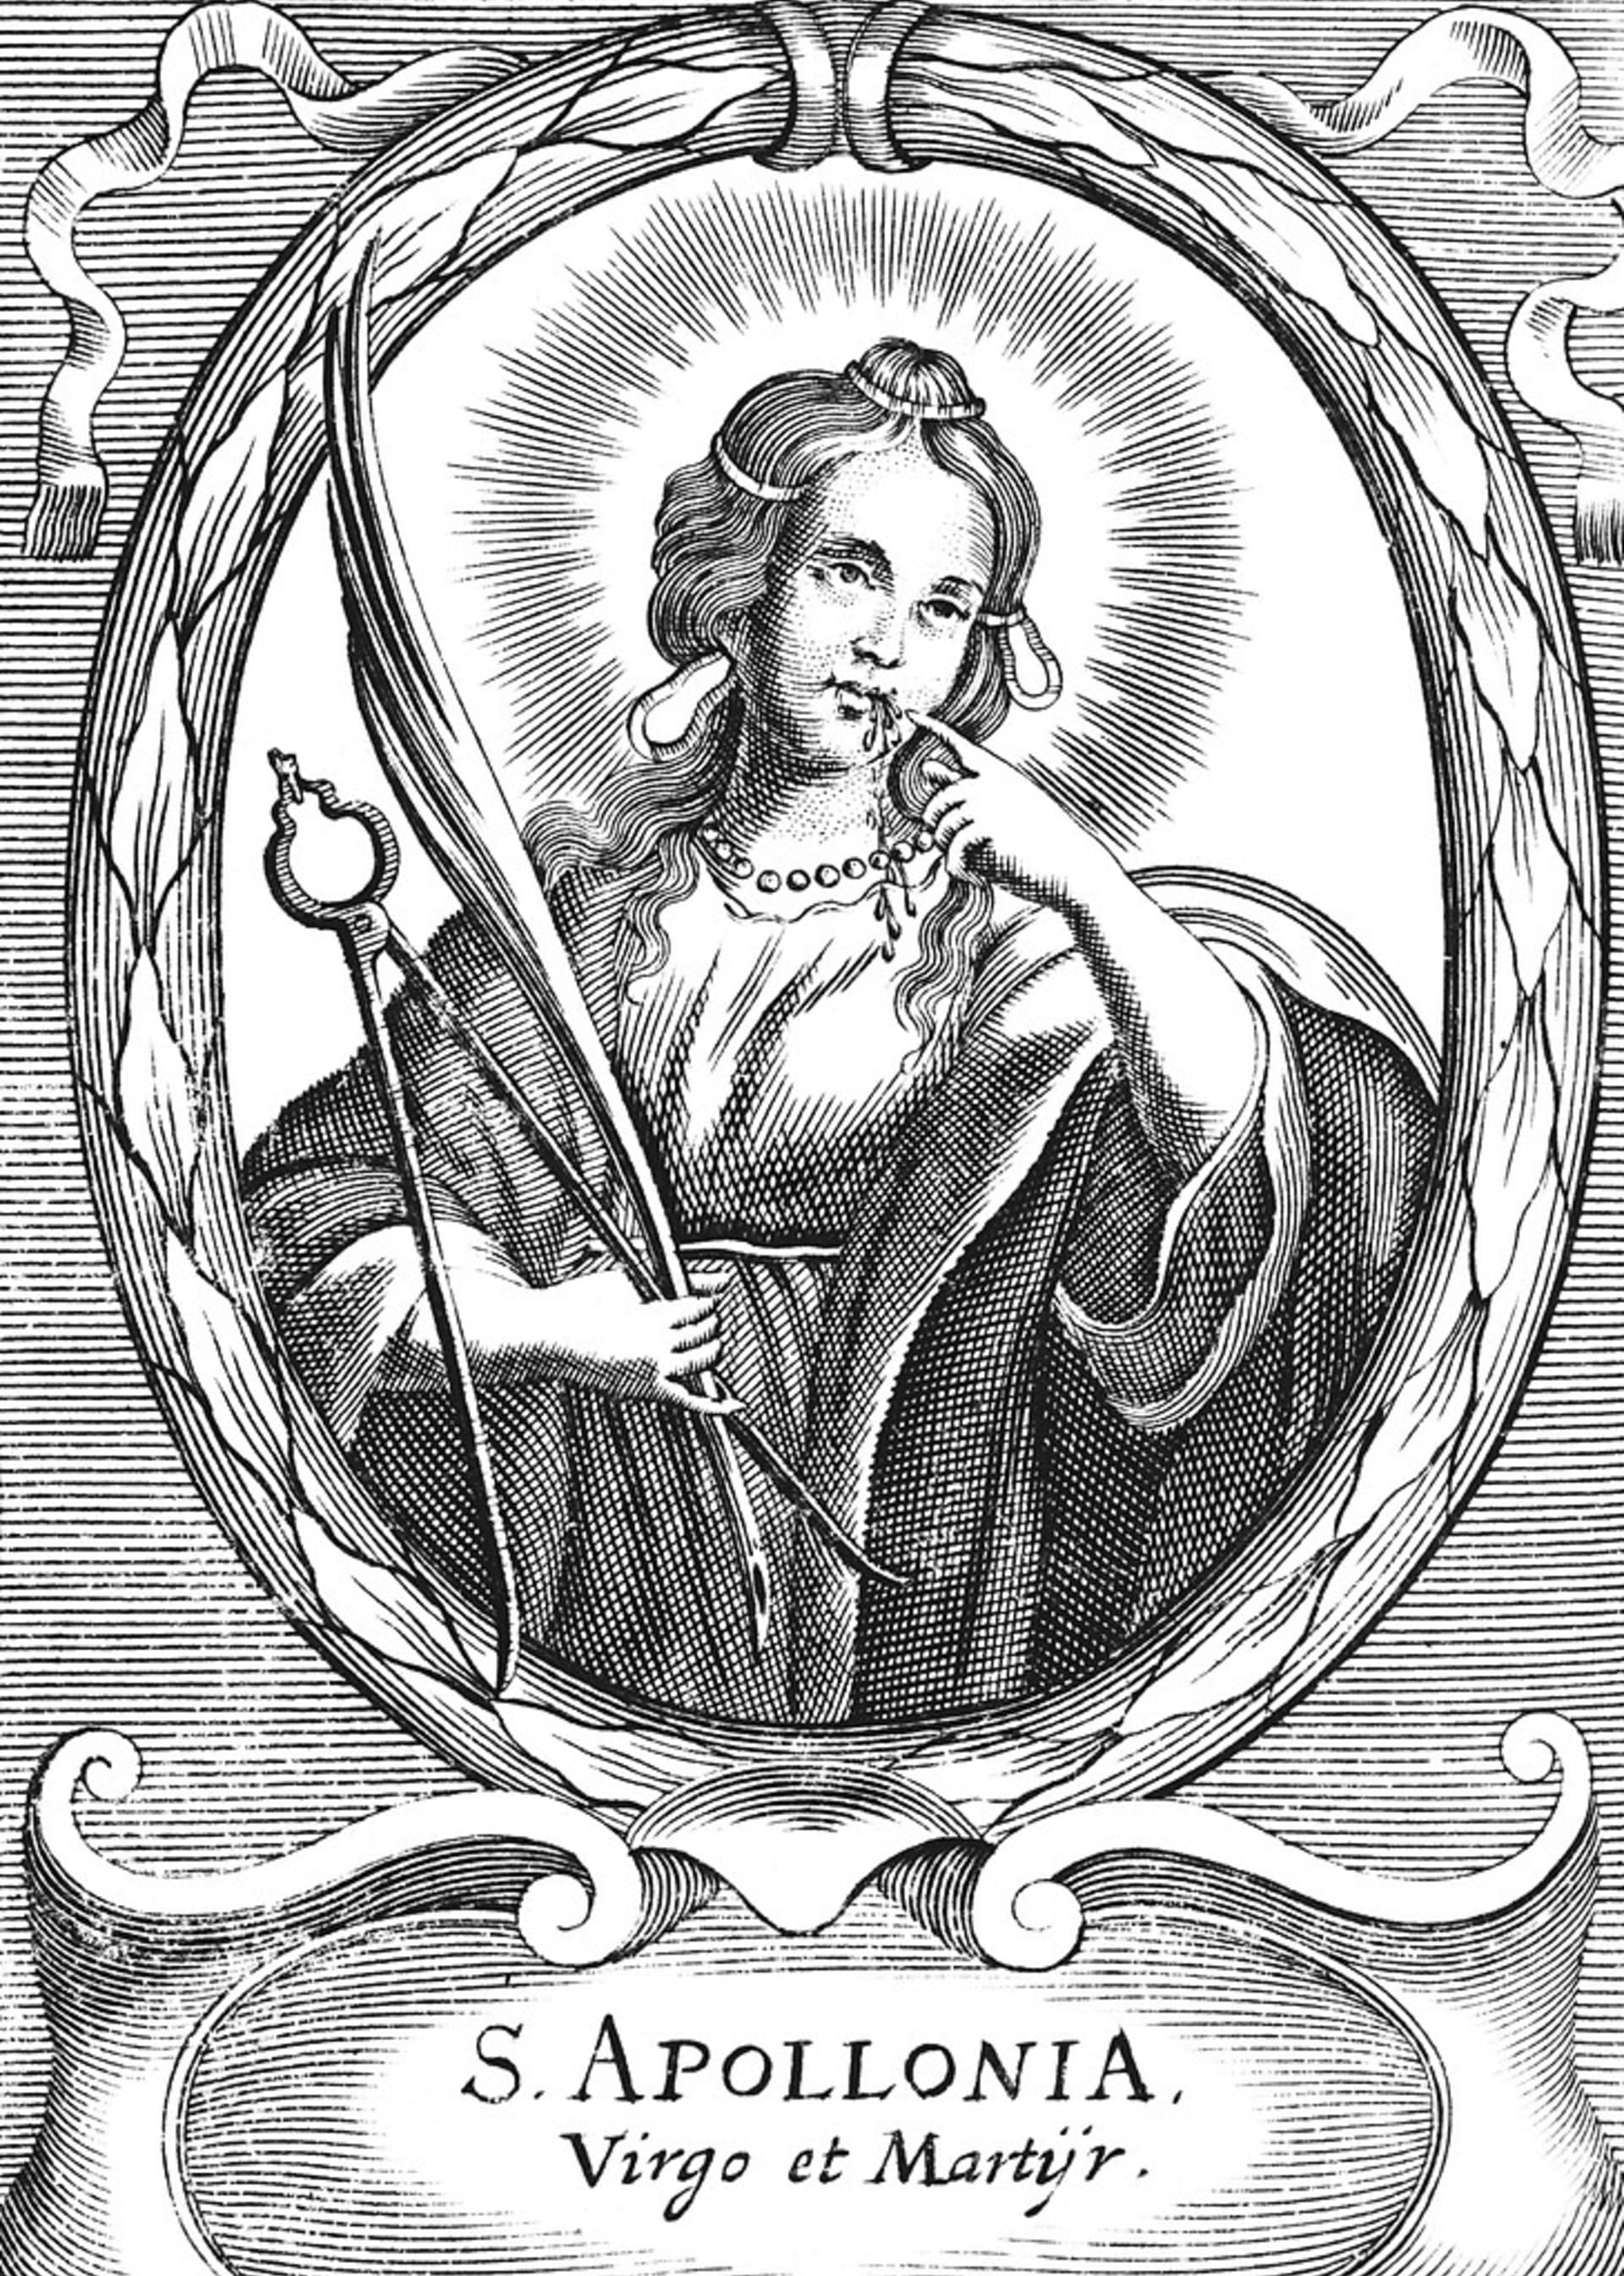 Svatá Apolena, patronka zubařů a pomocnice při bolestech zubů zemřela kolem roku 250